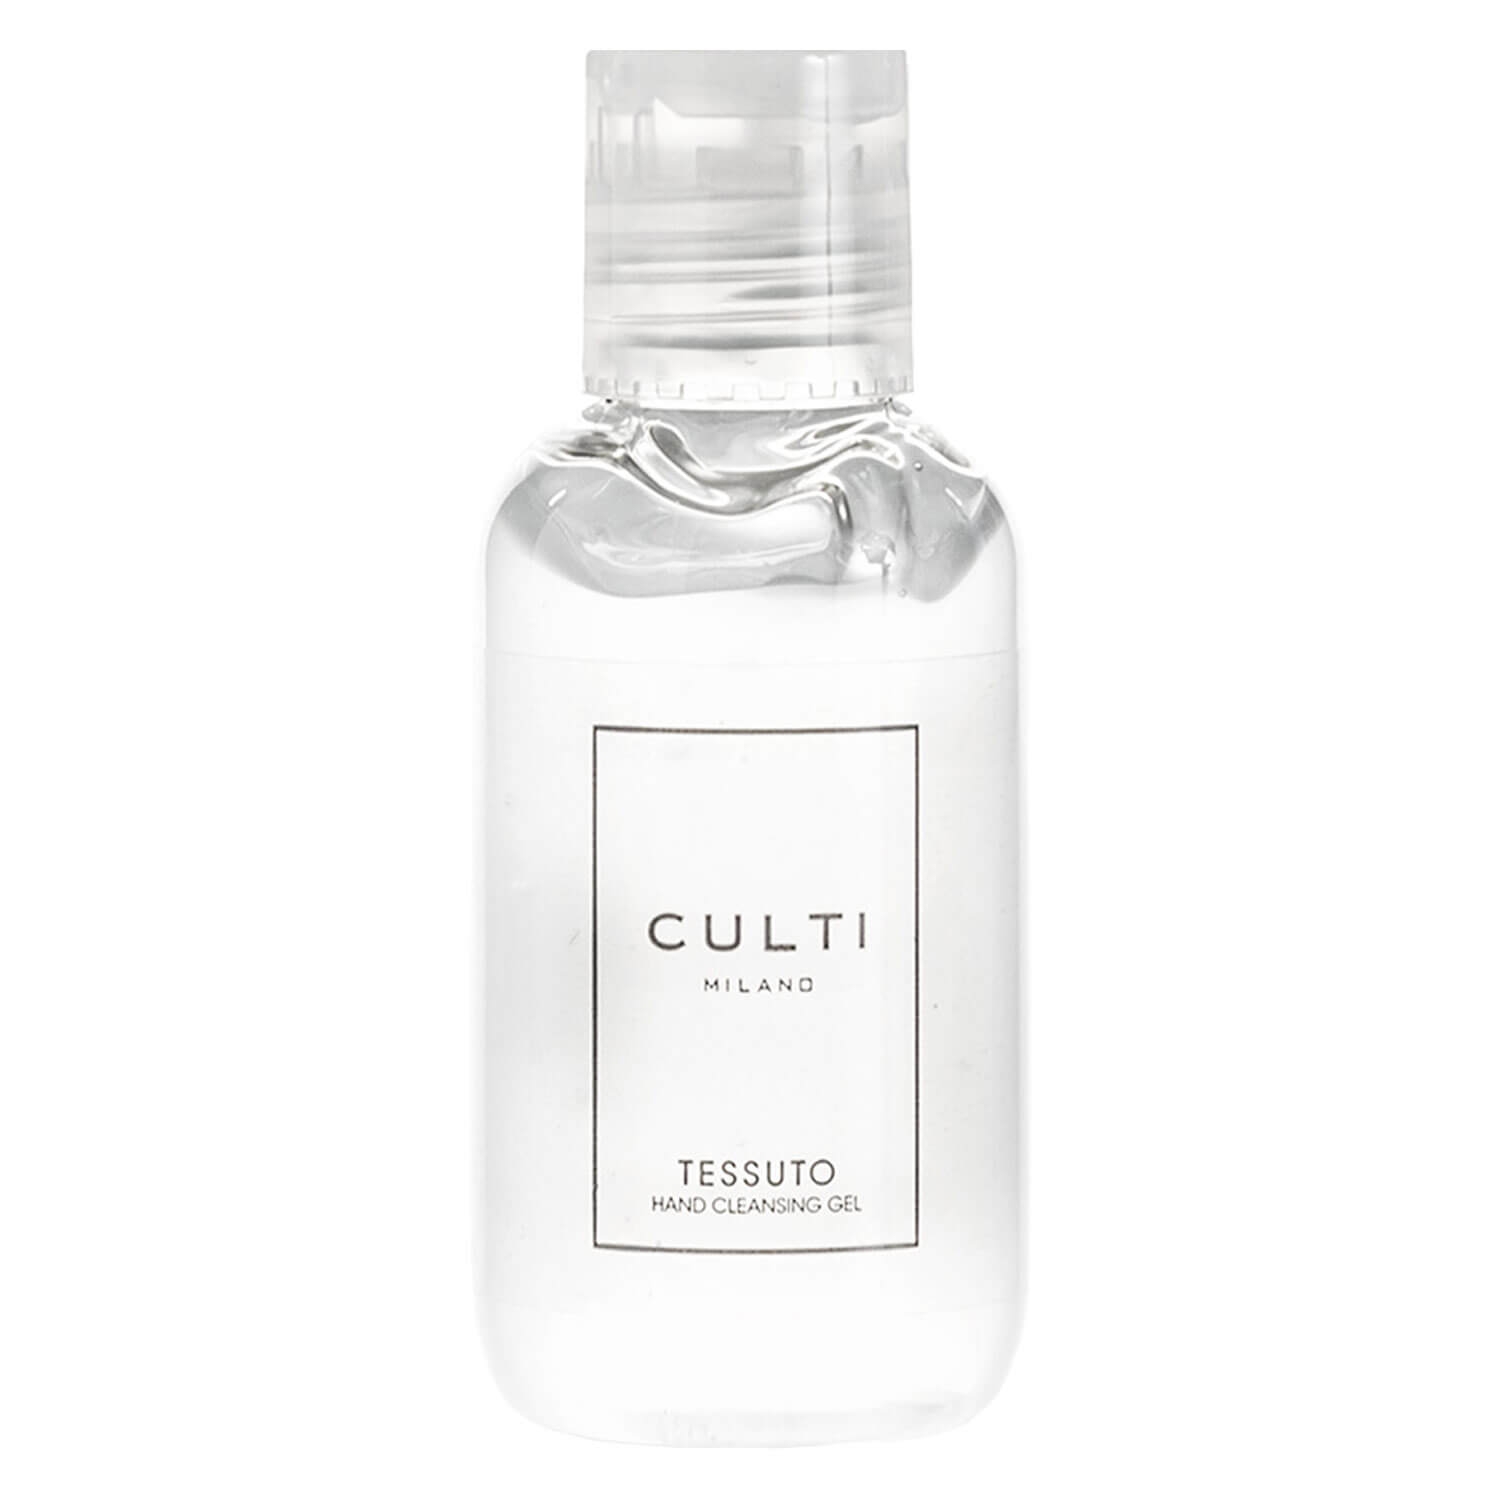 Produktbild von CULTI Sanitizer - Hand Cleansing Gel Tessuto